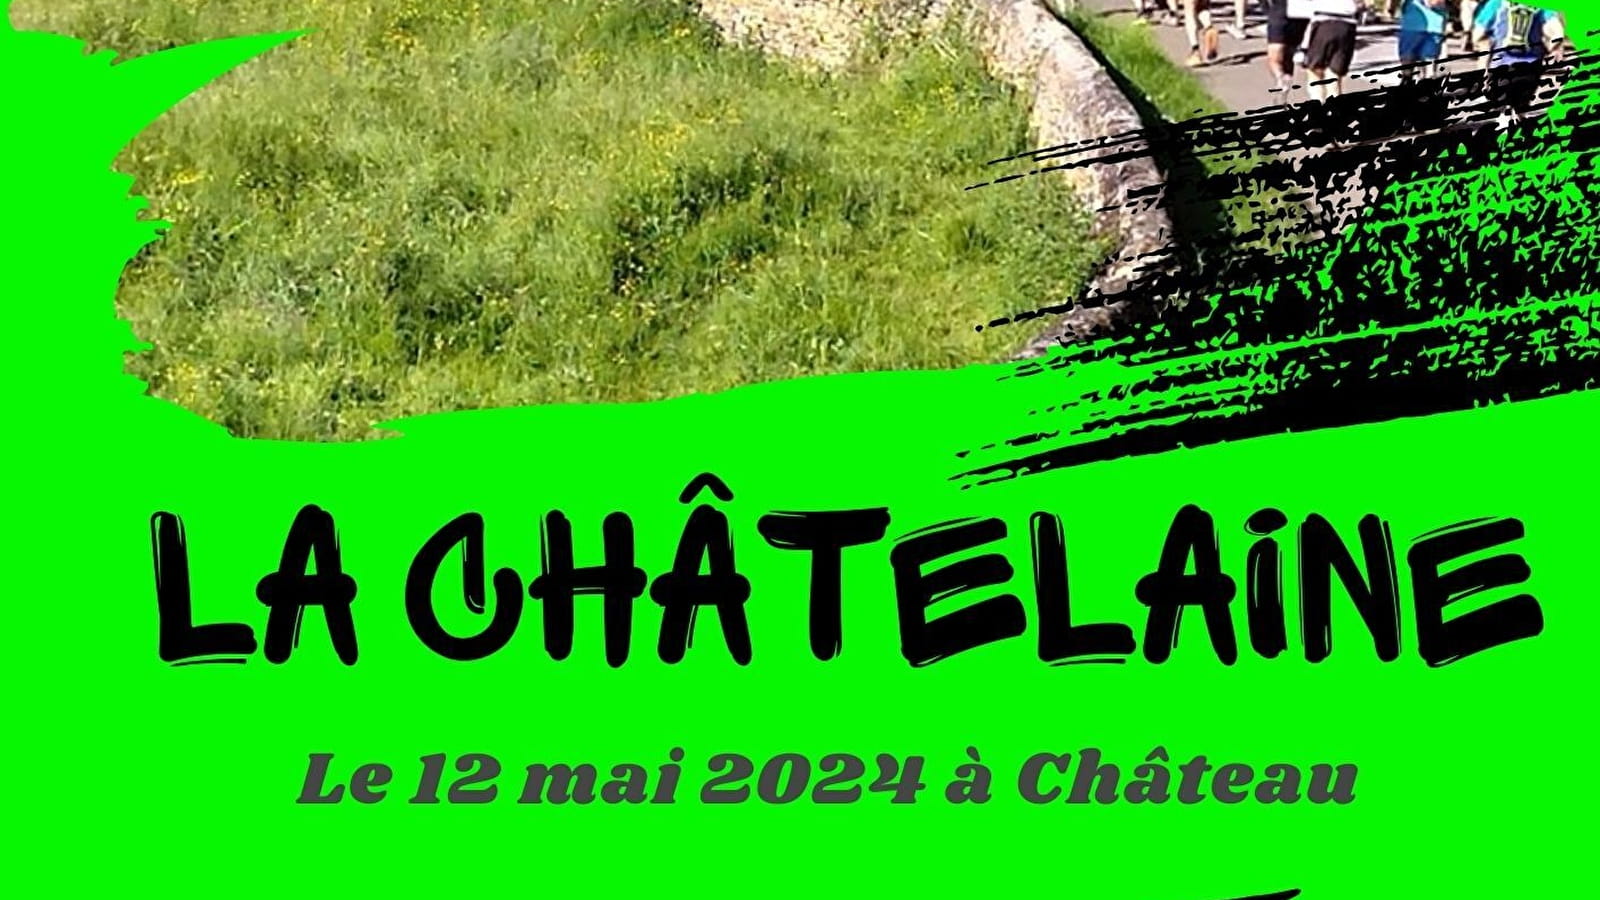 Pad La Chatelaine